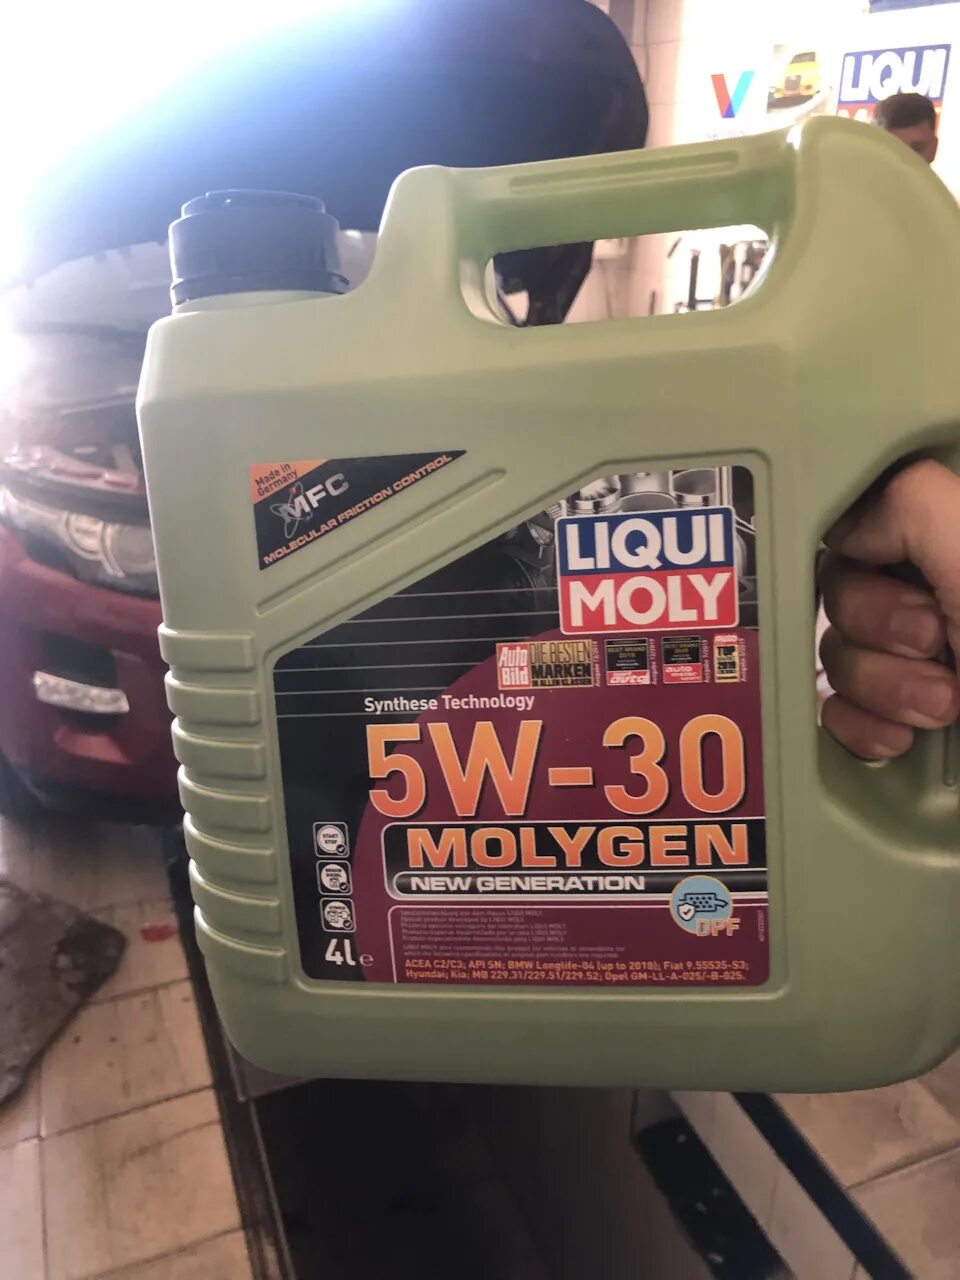 Liqui Moly 5w30. Ликви моли молиген 5w30. Моторное масло Liqui Moly Molygen 5w30 Diesel 4l. Liqui Moly Molygen 5w30 4л дизель. Масло ликвимоль 5w30